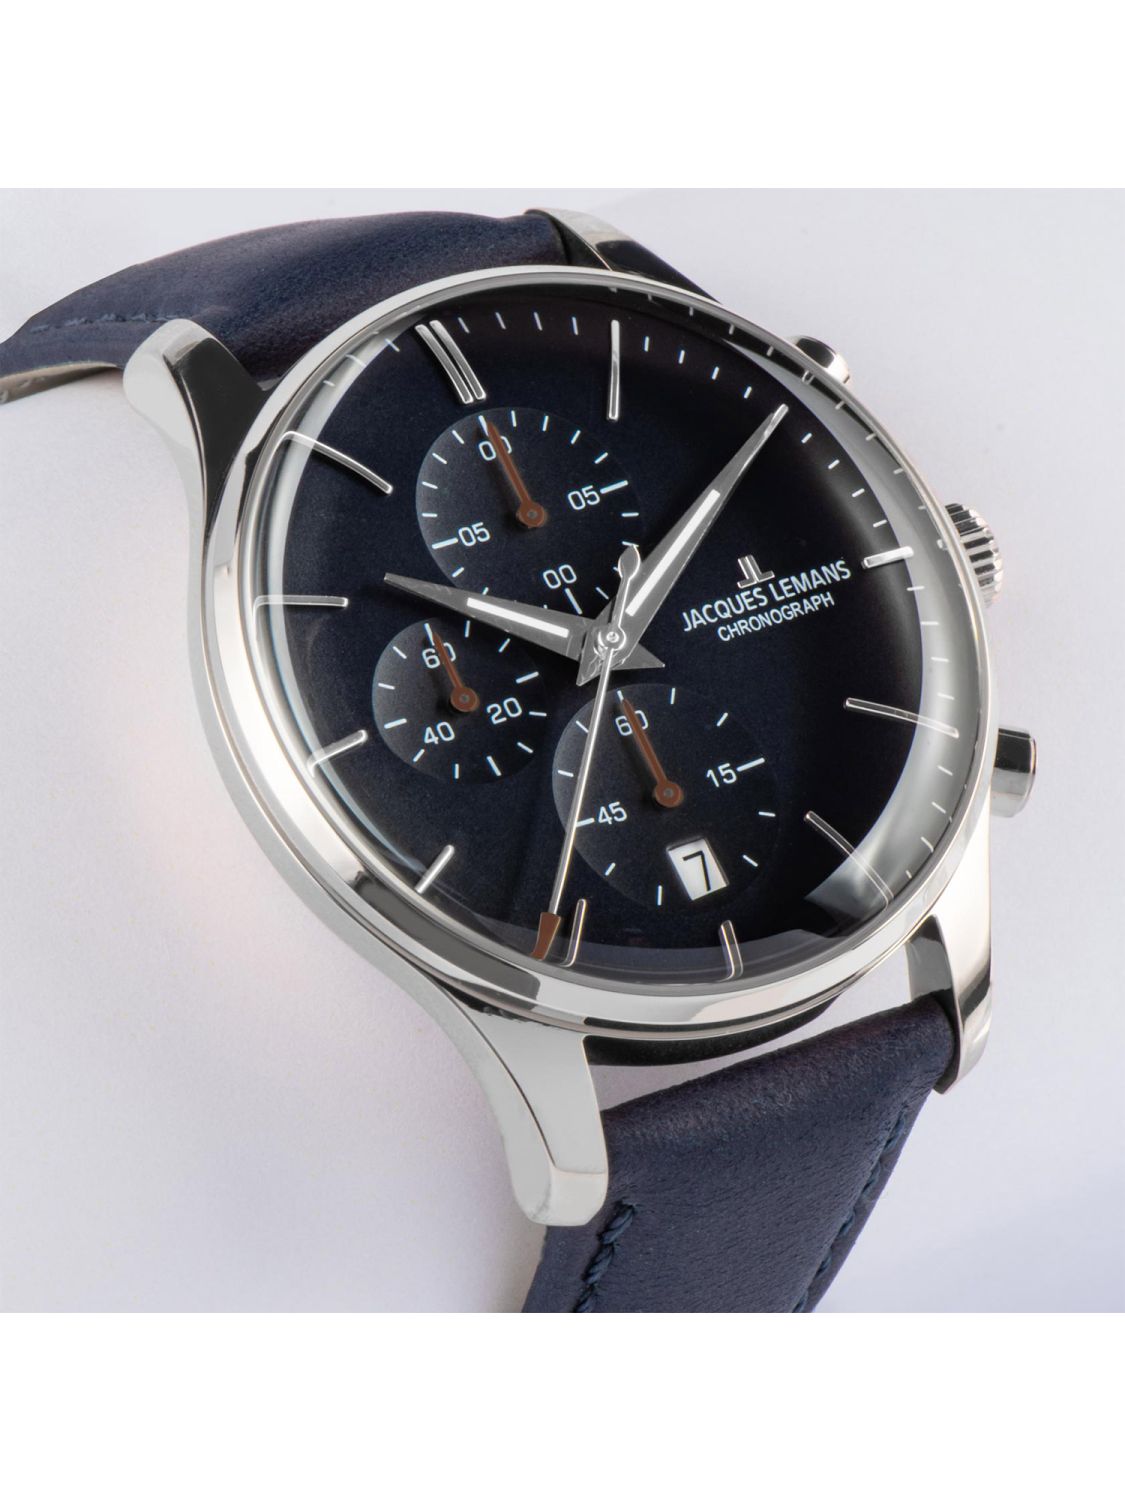 Jacques Lemans Men's Watch Chronograph London Blue 1-2163C • uhrcenter